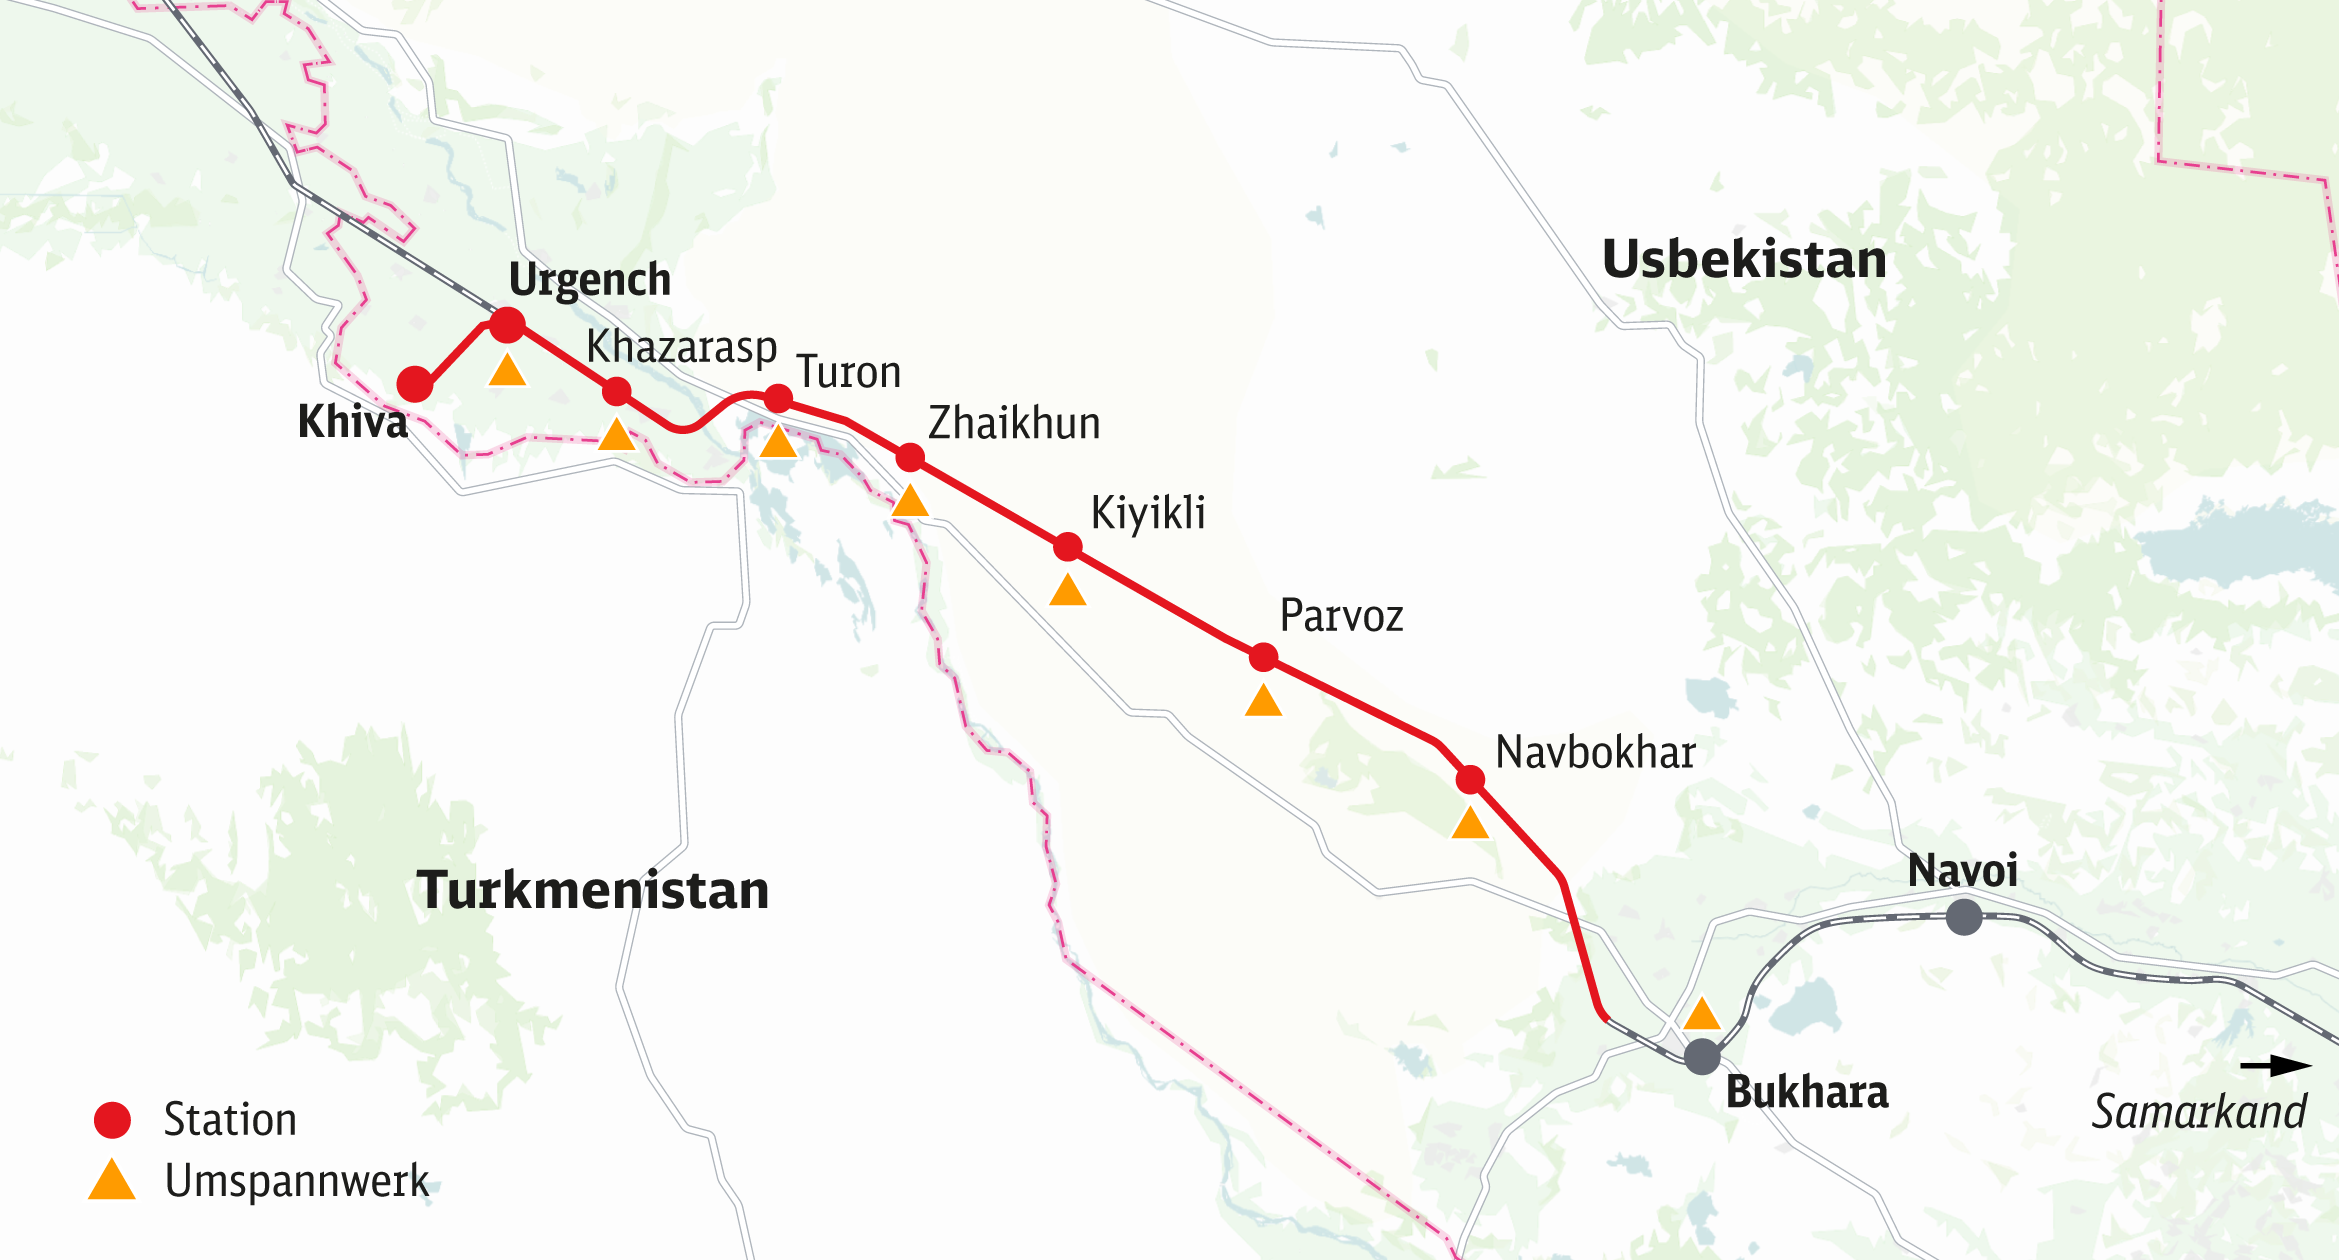 Eisenbahn Usbekistan: Streckenkarte des Elektrifizierungsprojekts